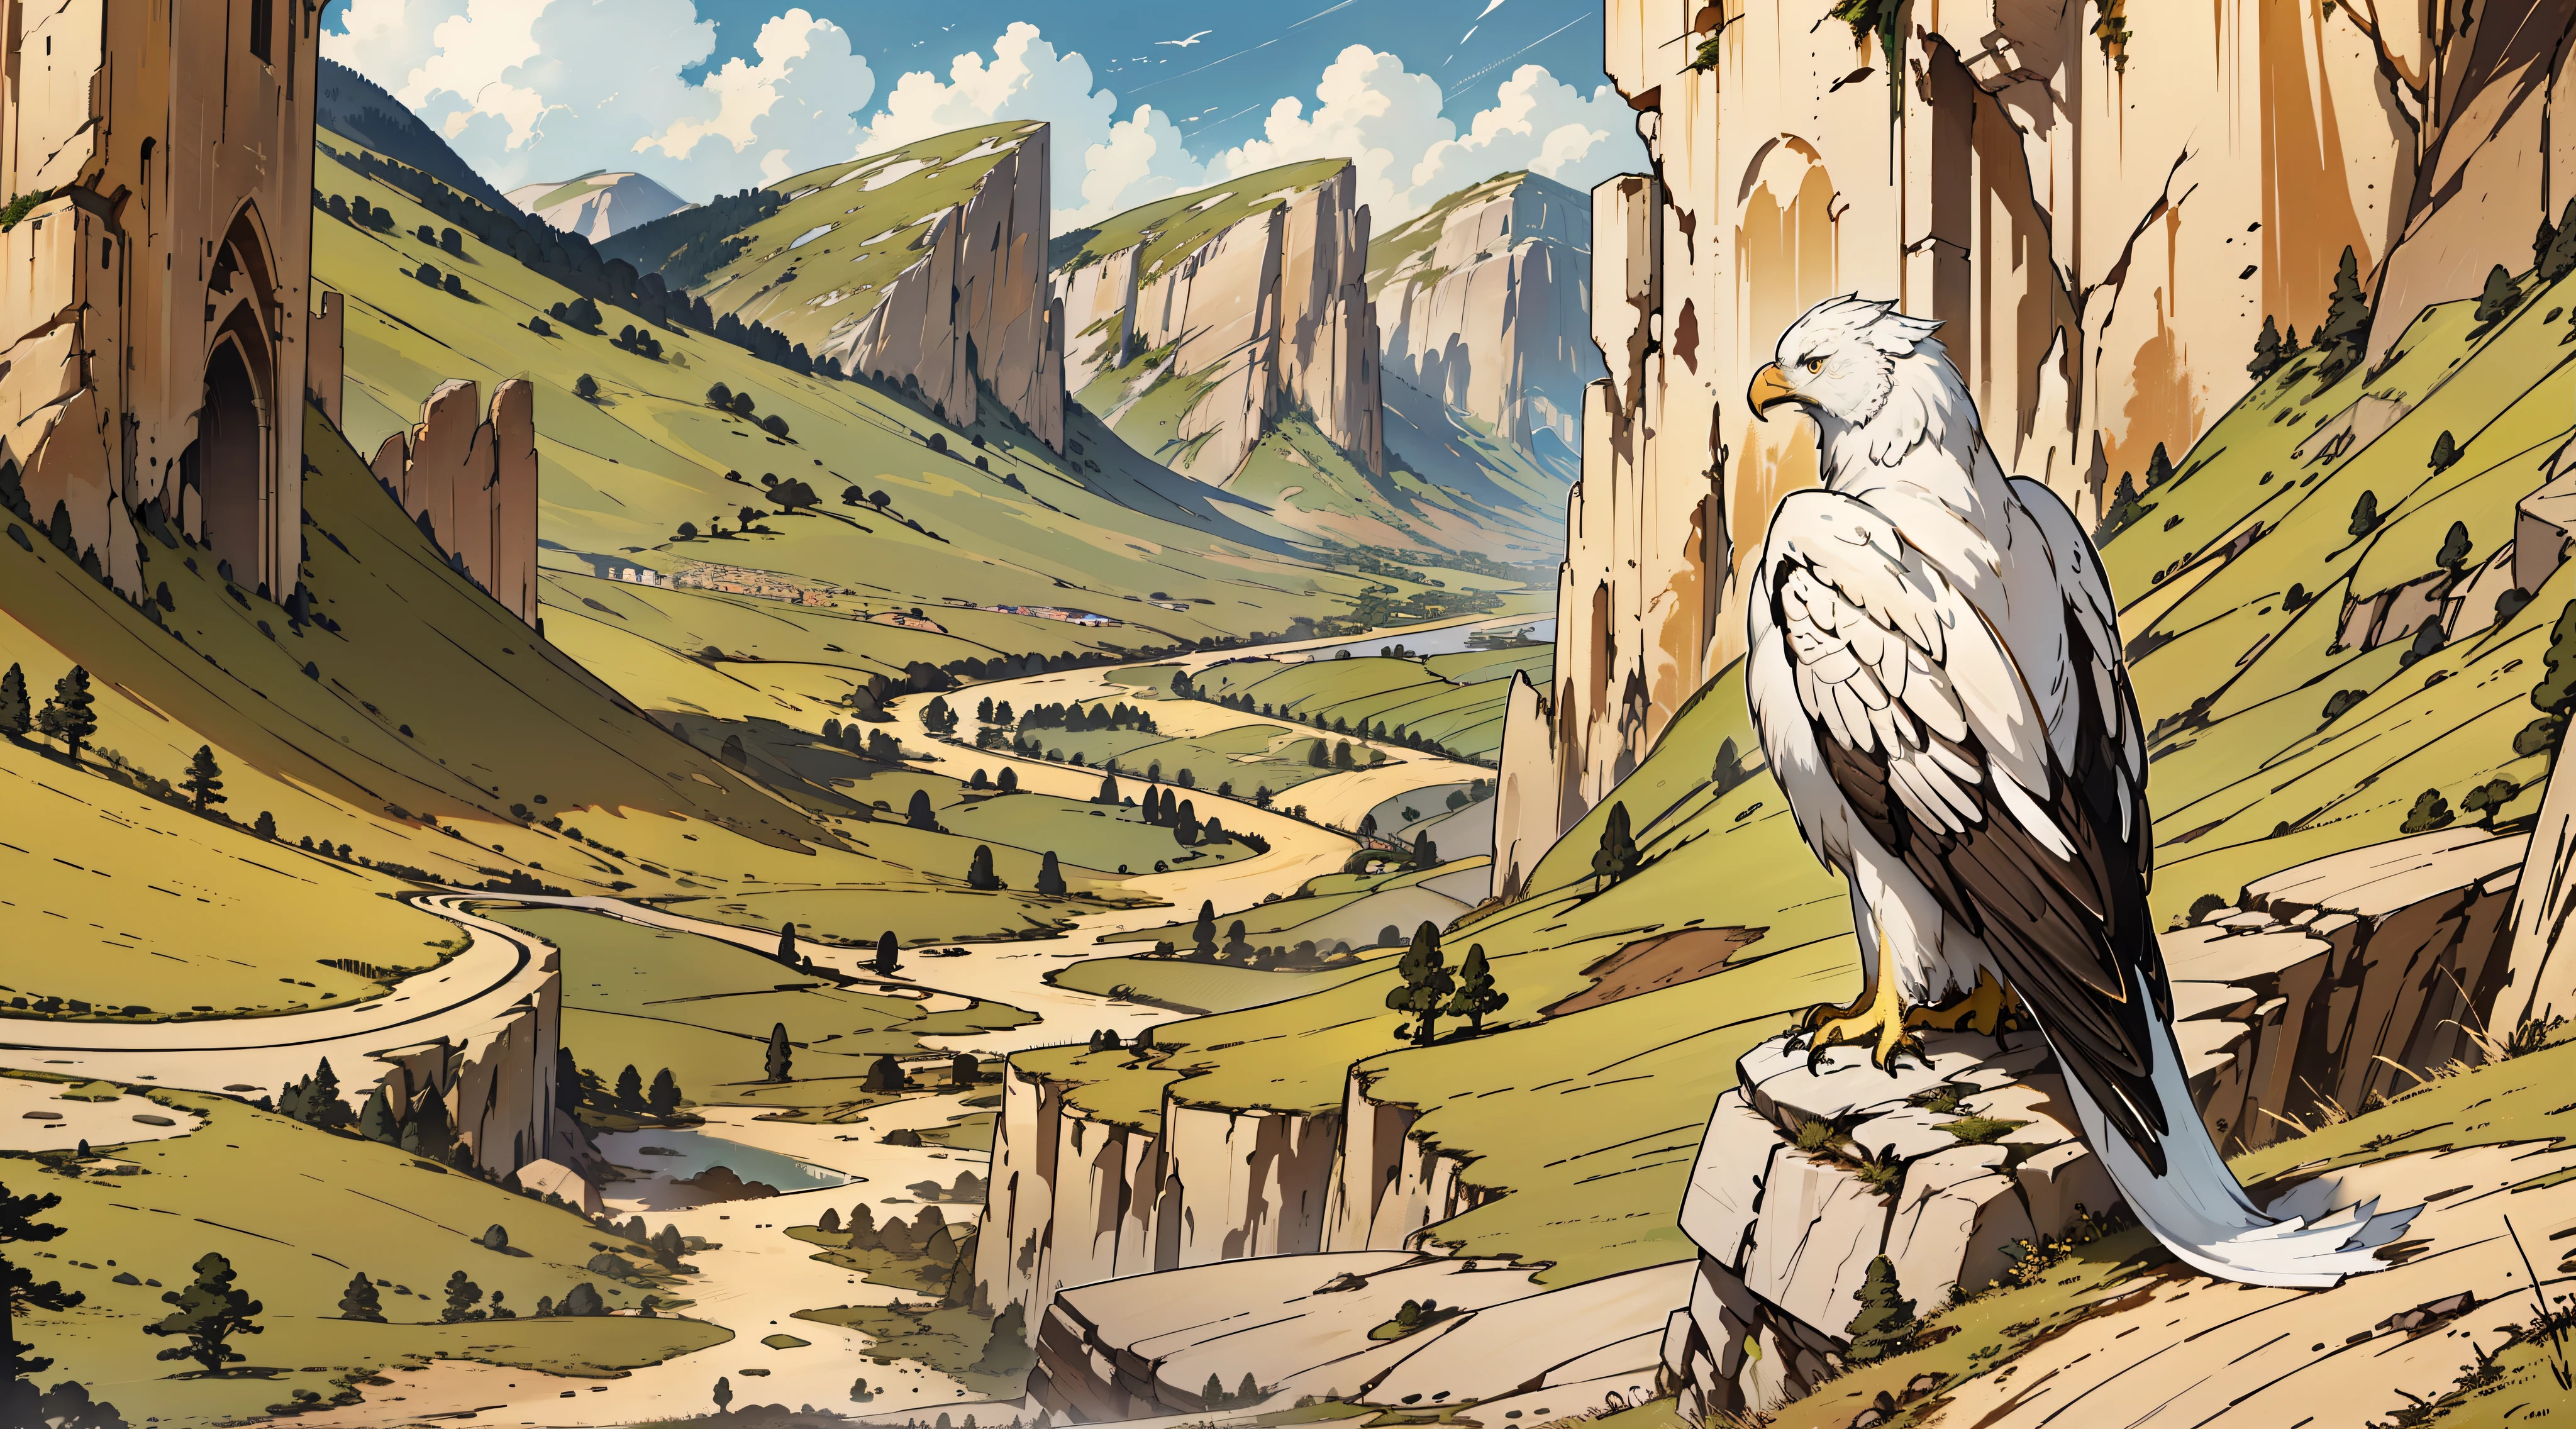 "Seitenansicht, Majestätisch und ehrfurchtgebietend, ein einsamer sehr großer weißer Adler 1:2 mit einem faszinierenden verlängerten Schwanz, der auf einer schroffen Klippe thront, mit Blick auf die staubige Straße im Tal unten."